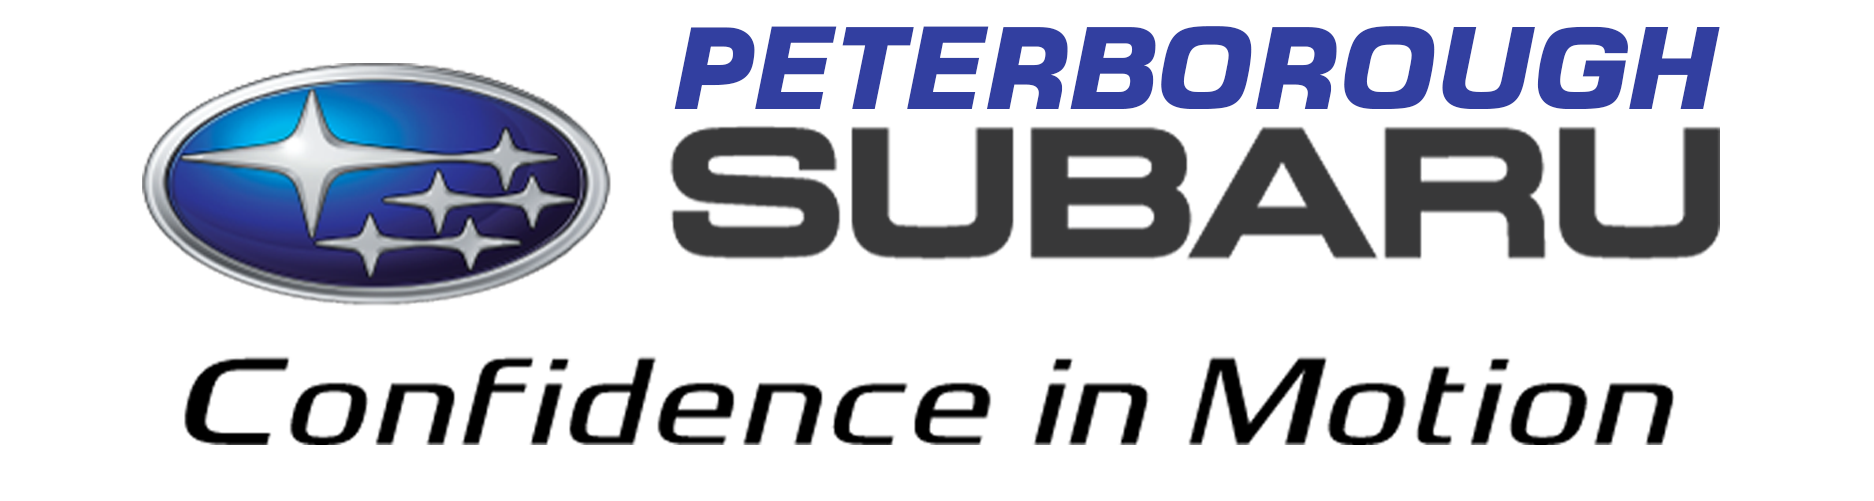 Peterborough Subaru logo linking to their website